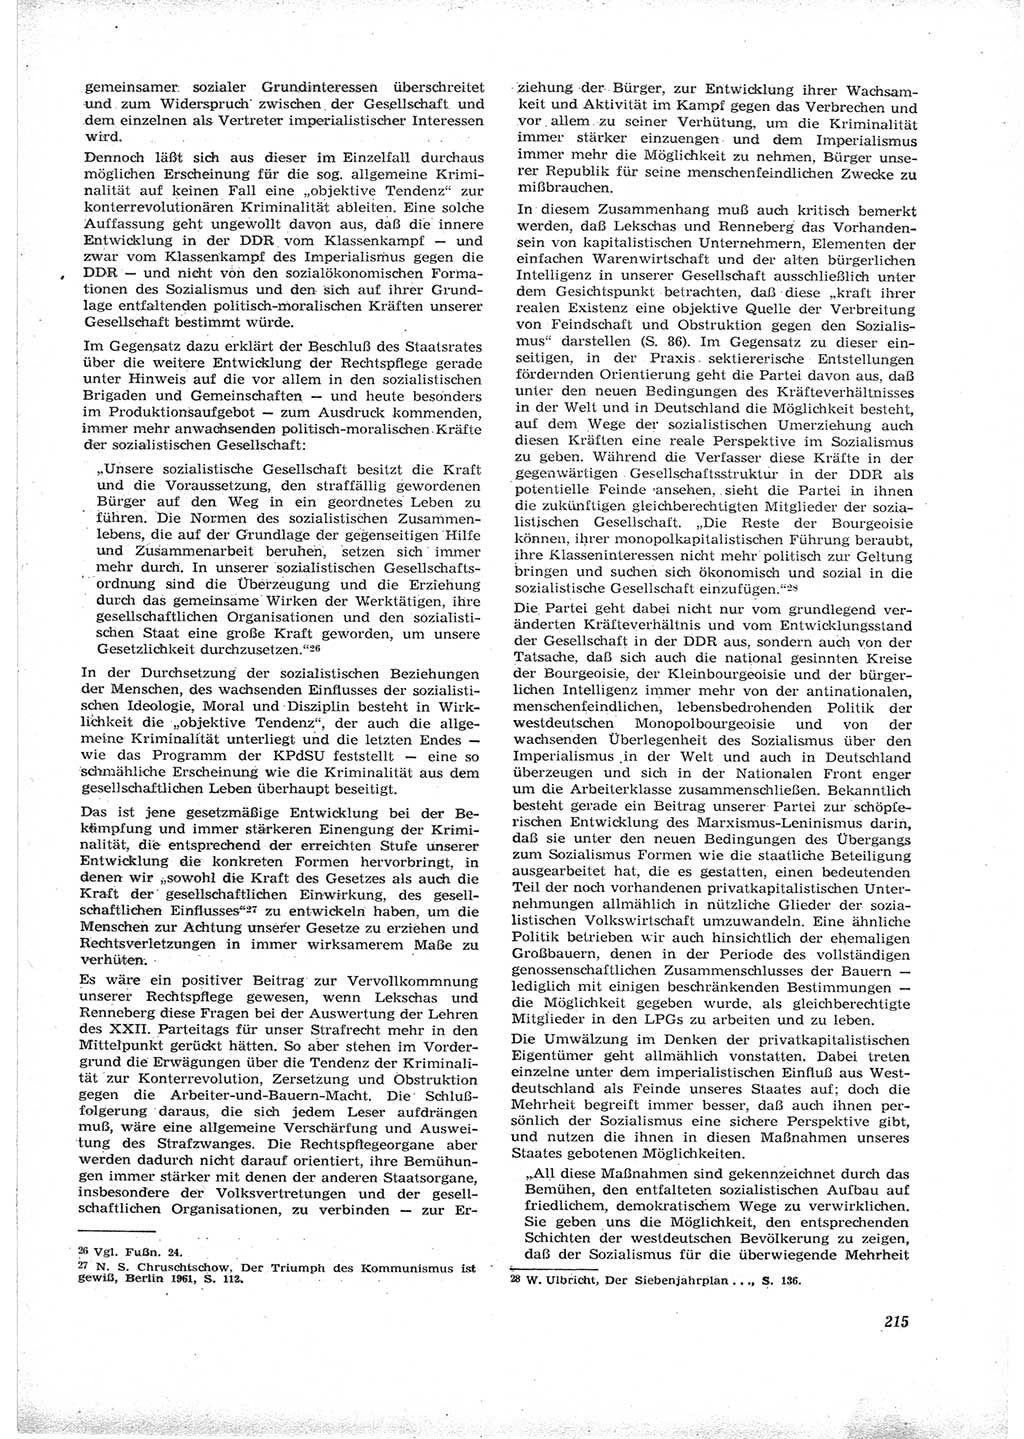 Neue Justiz (NJ), Zeitschrift für Recht und Rechtswissenschaft [Deutsche Demokratische Republik (DDR)], 16. Jahrgang 1962, Seite 215 (NJ DDR 1962, S. 215)